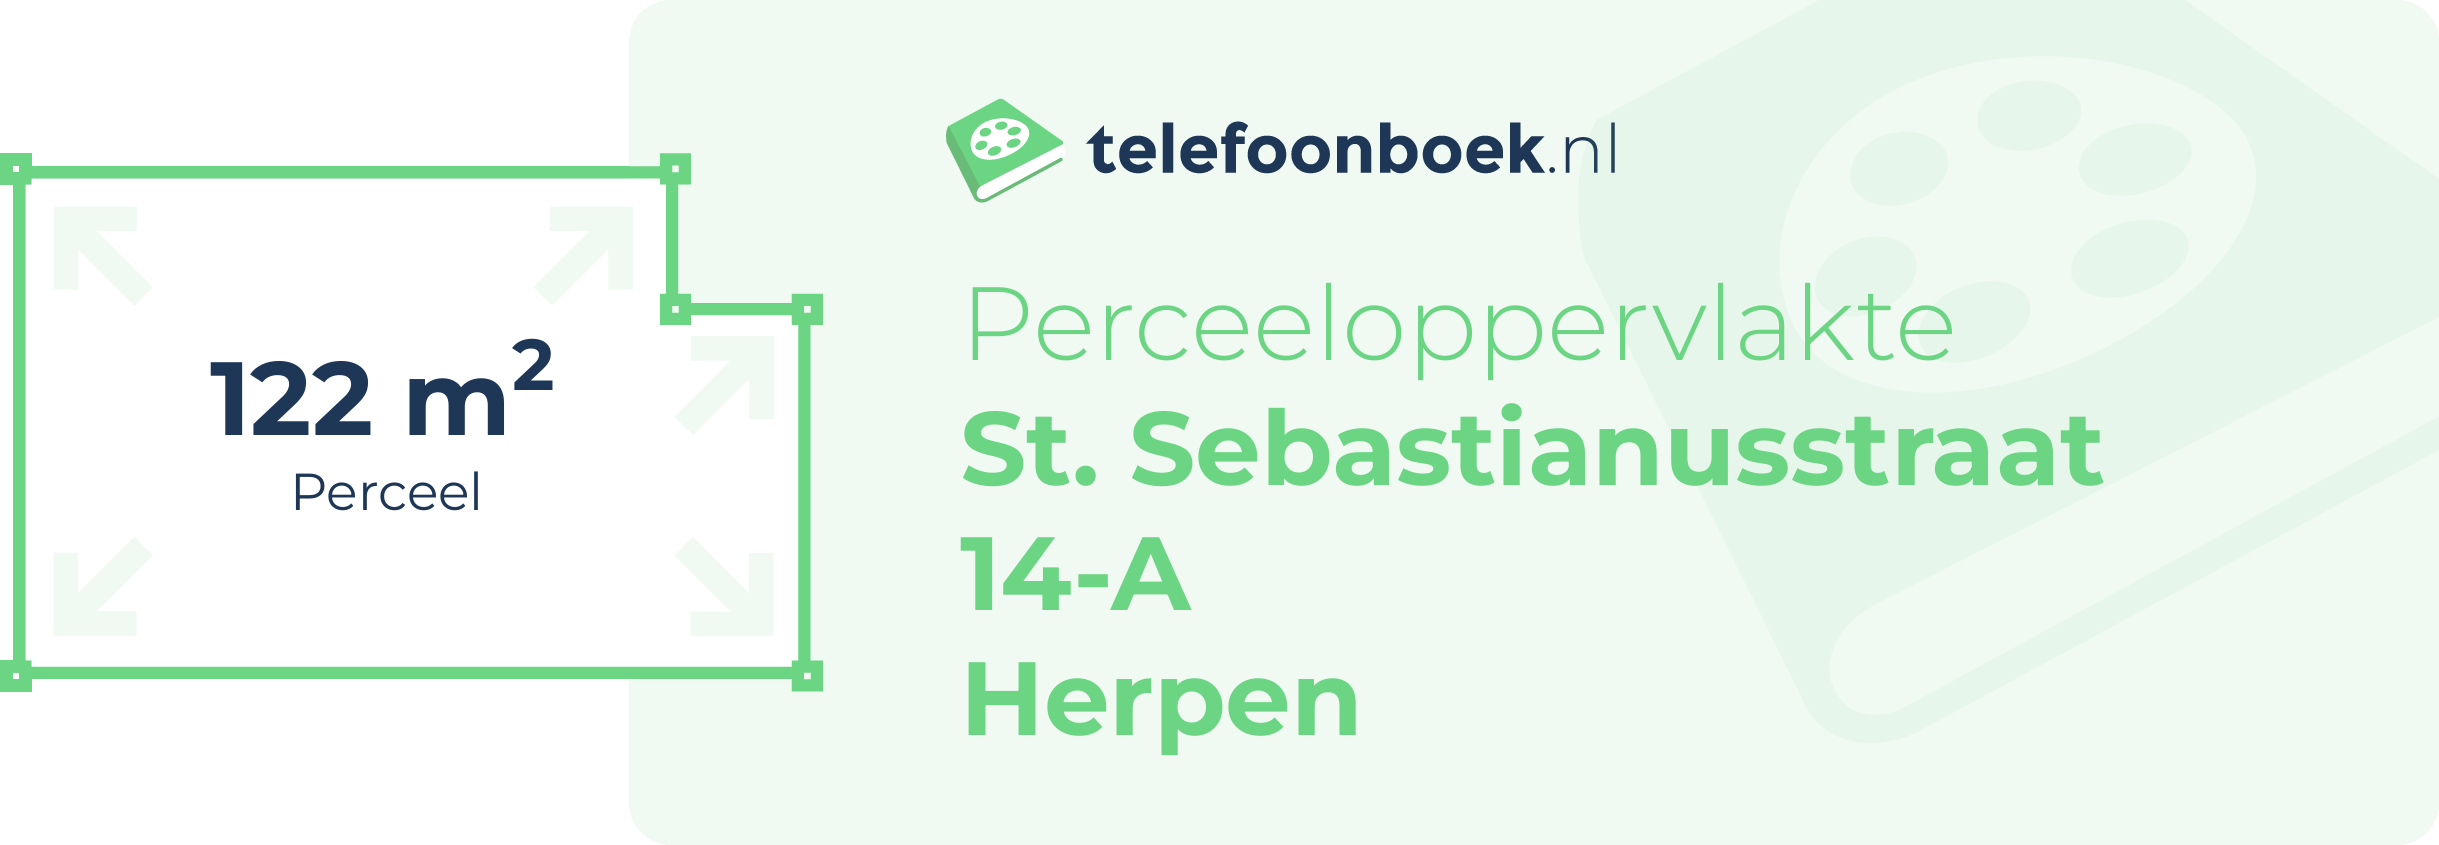 Perceeloppervlakte St. Sebastianusstraat 14-A Herpen